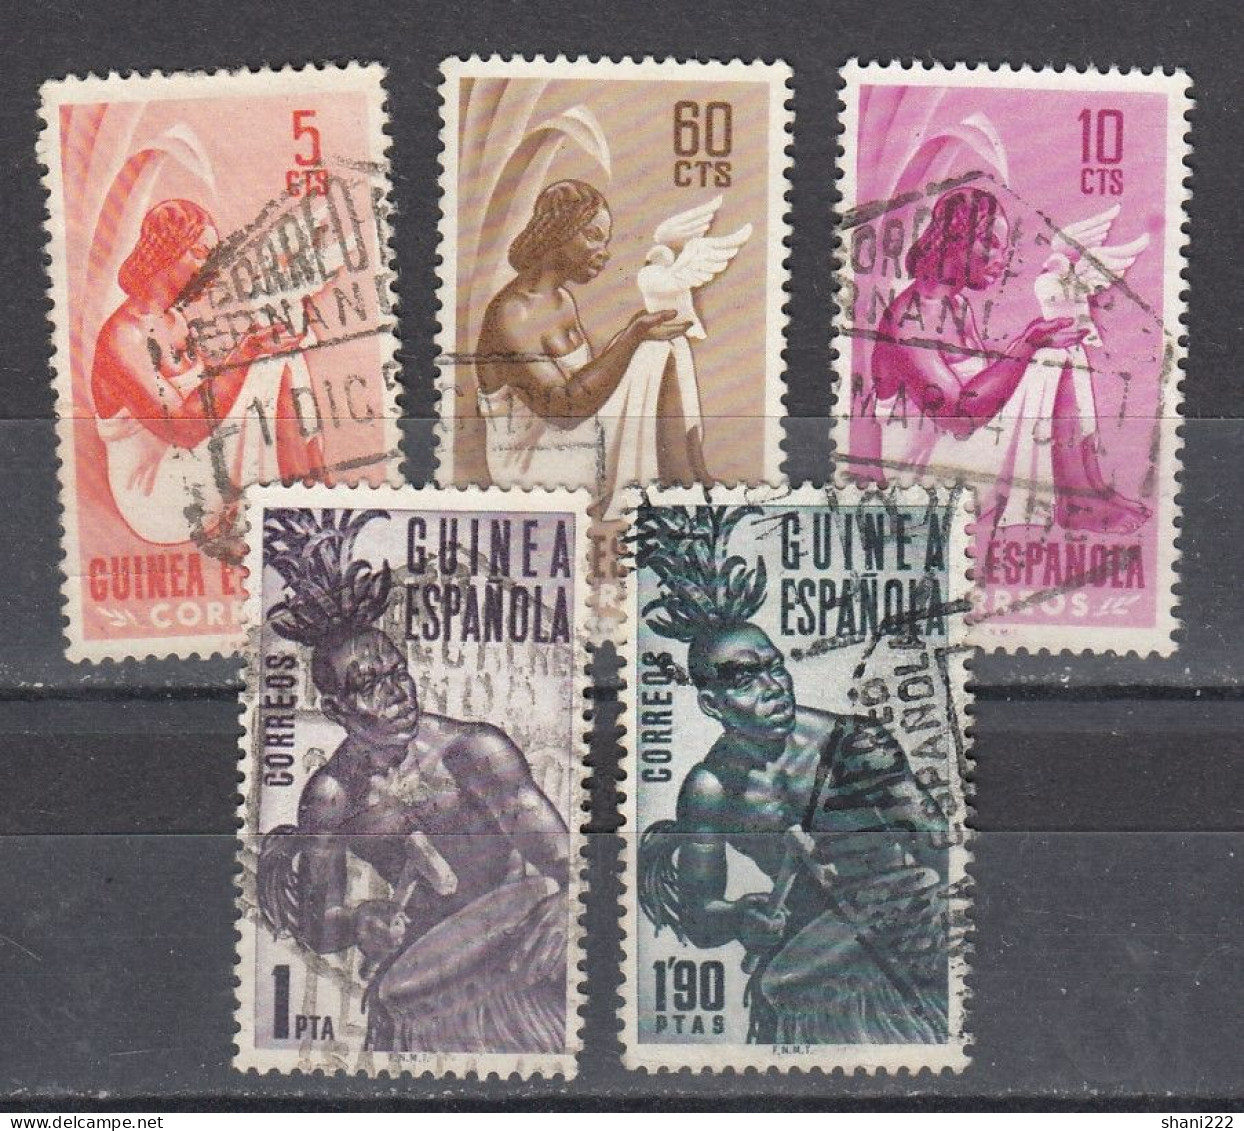 Spanish Guinea - 1953 Definitives,  - Used Set (e-809) - Spanish Guinea